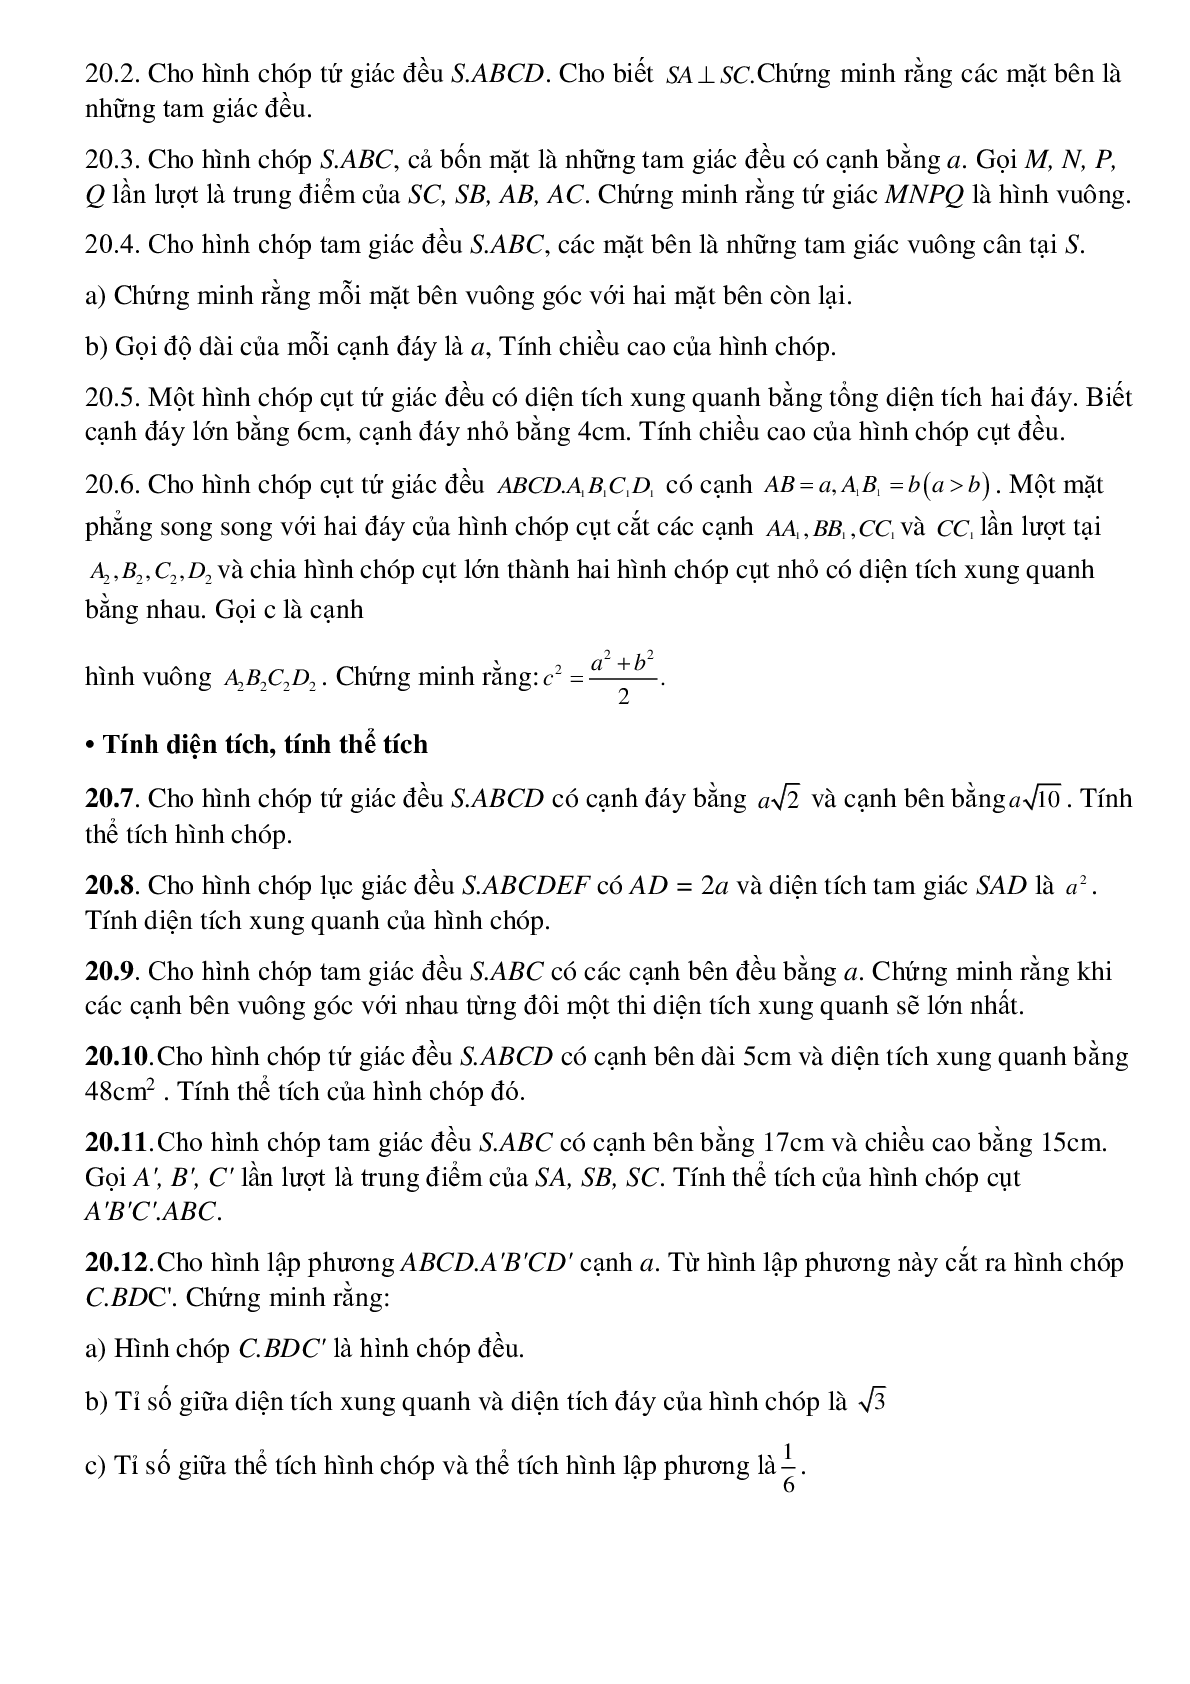 Hình chóp đều - Hình học toán 8 (trang 6)